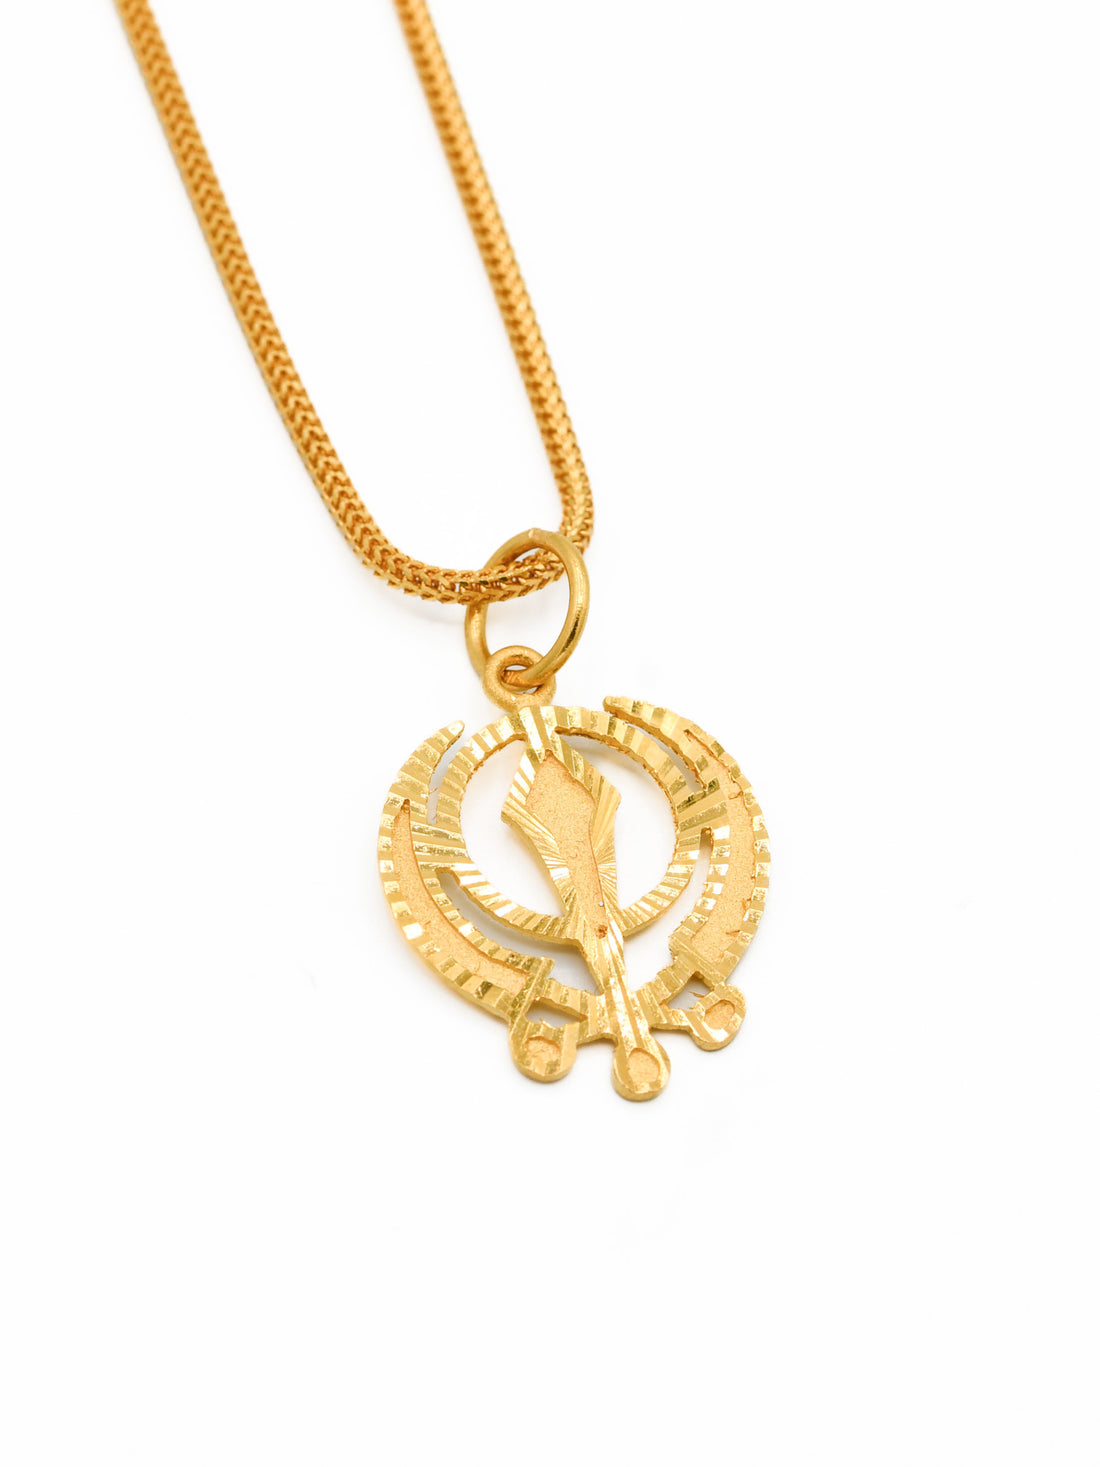 22ct Gold Khanda Pendant - Roop Darshan